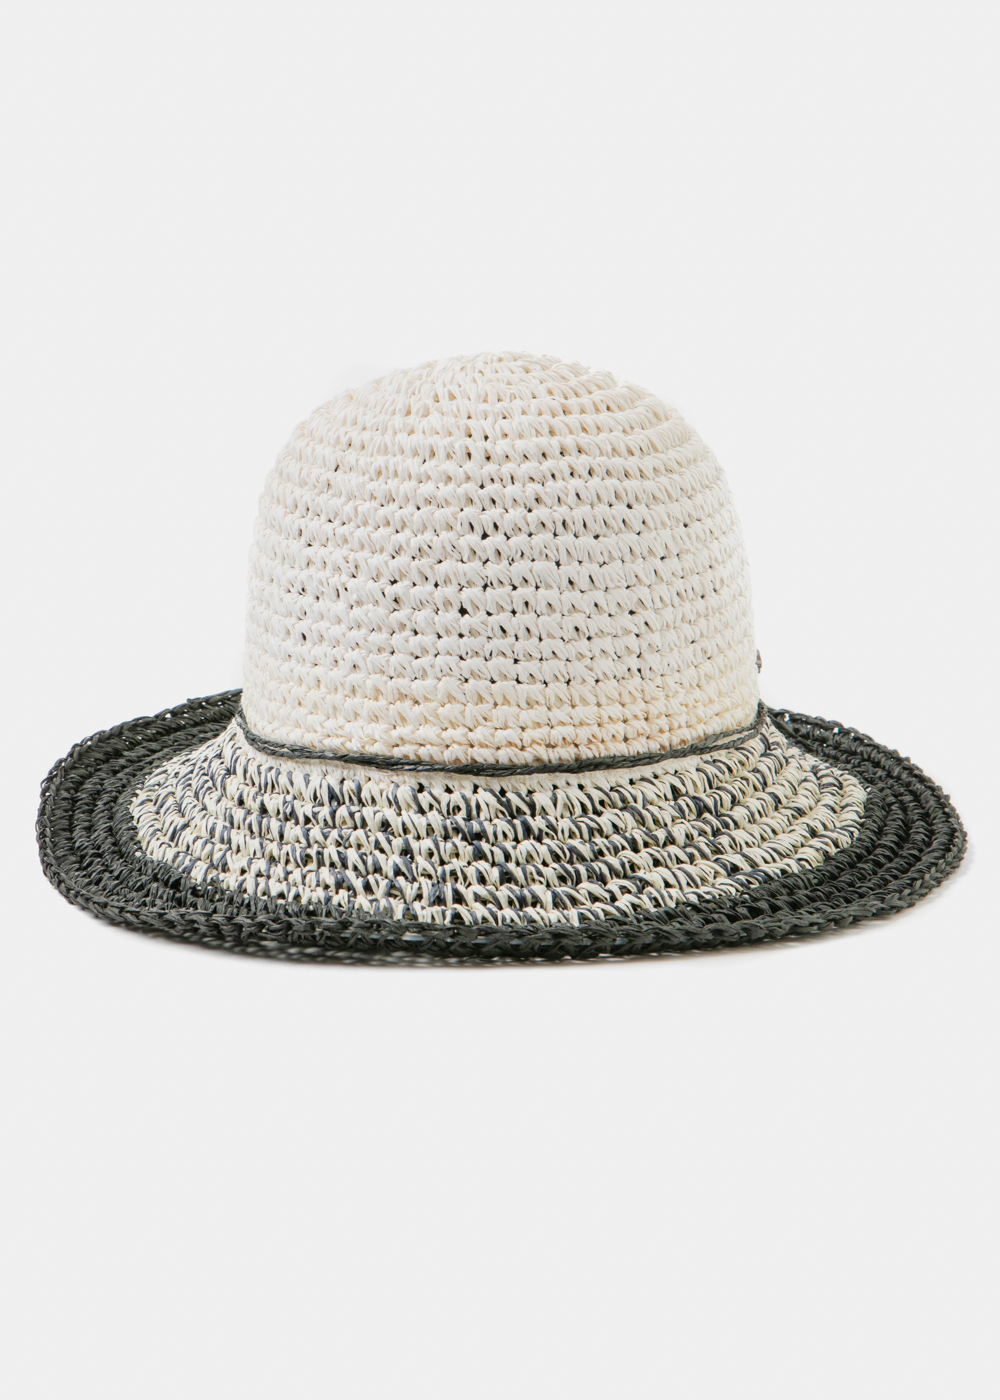 Black & White Bucket Style Straw Hat